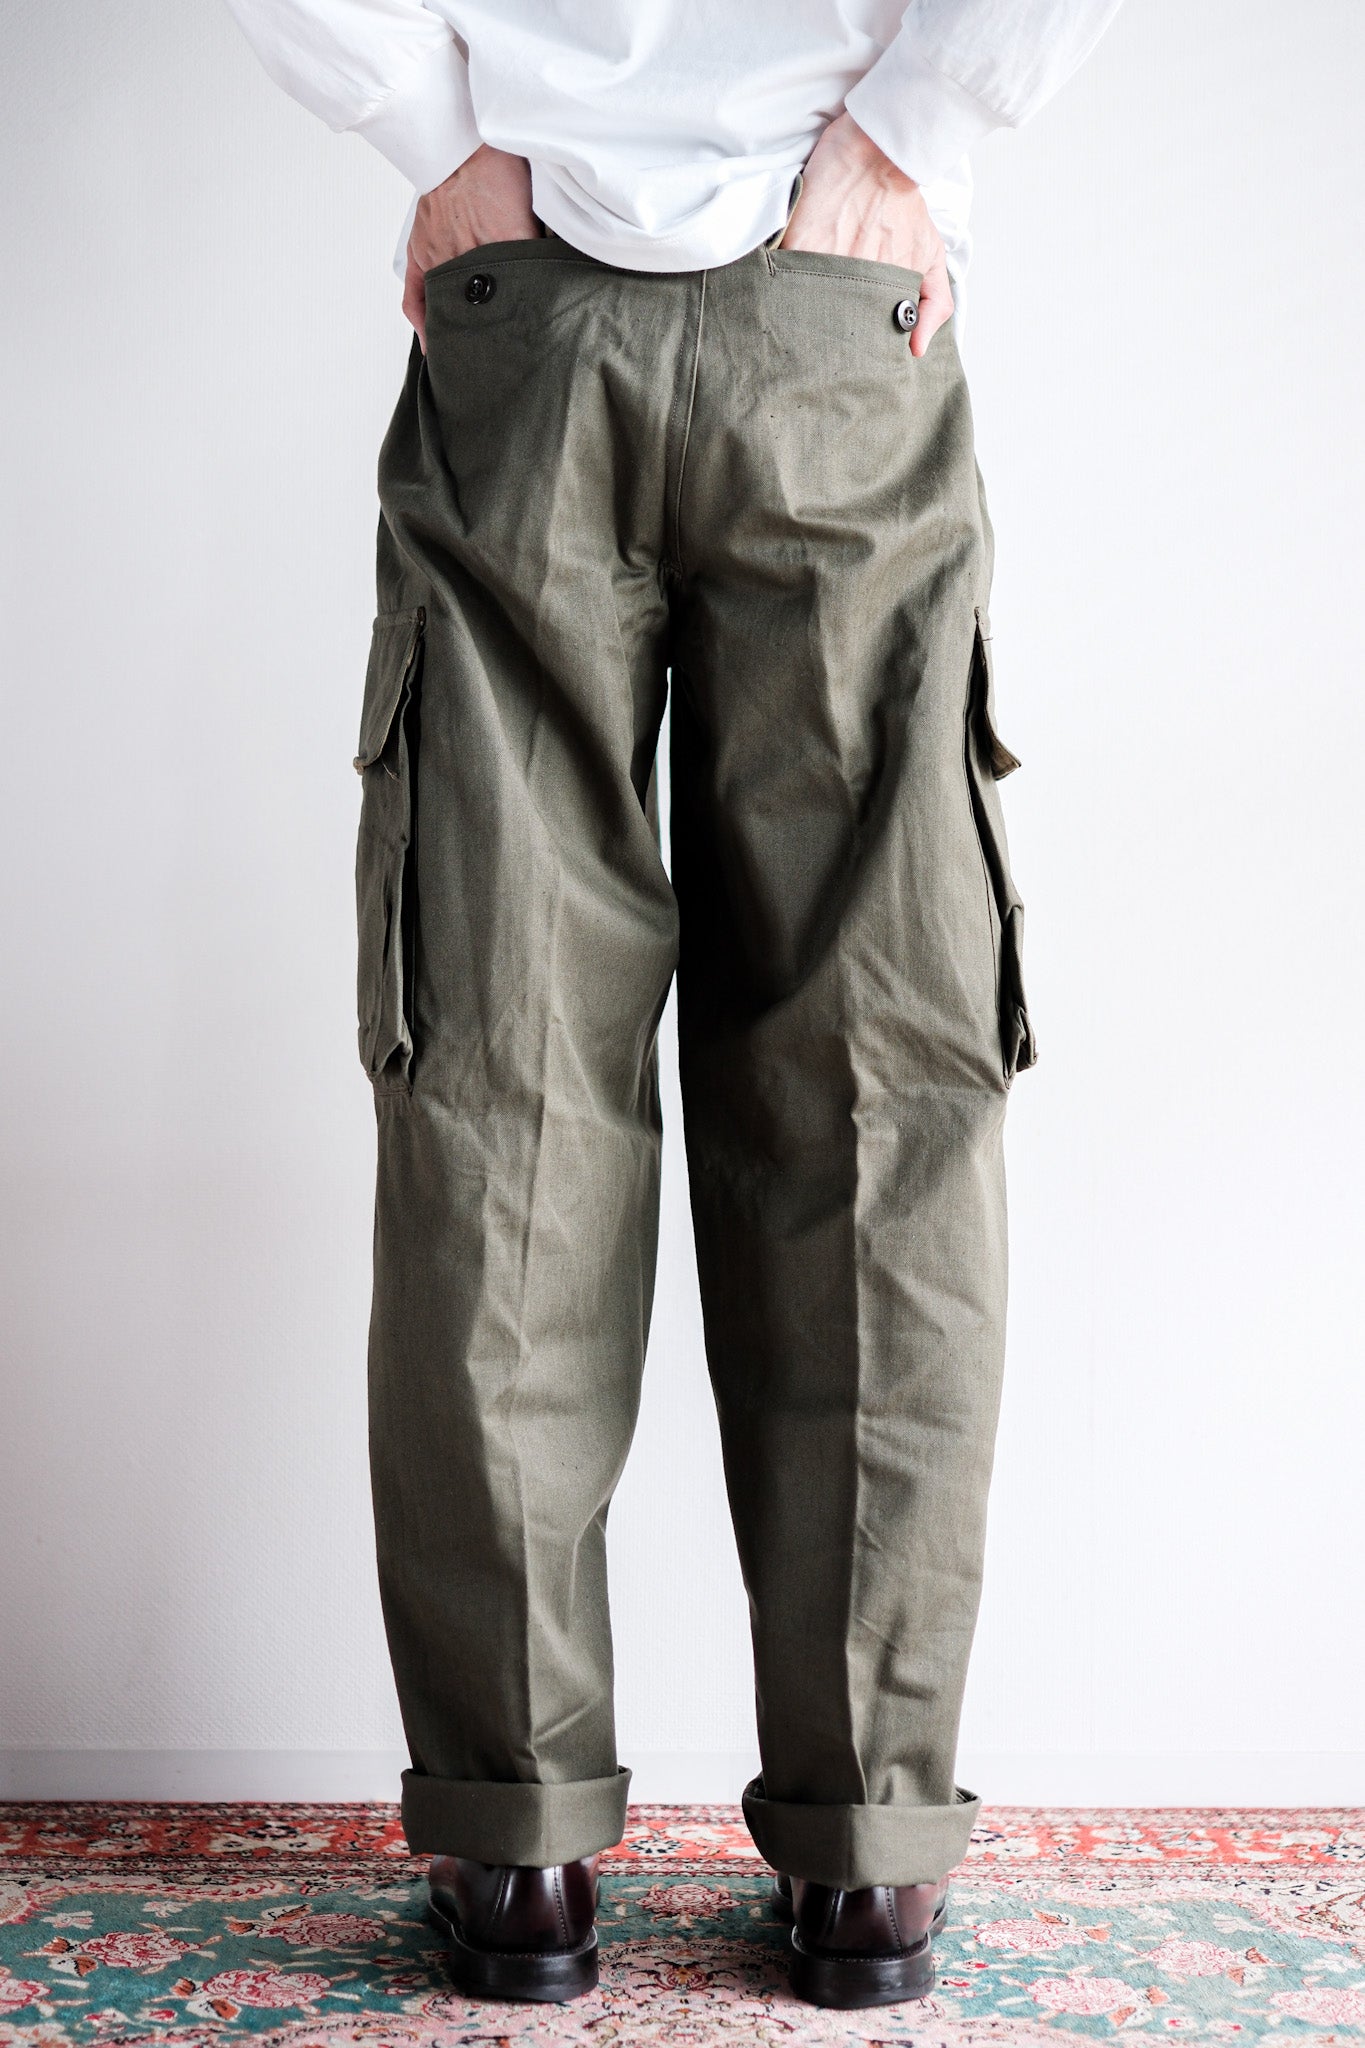 [〜60年代]法國陸軍M47野外褲子大小。21“死庫存”